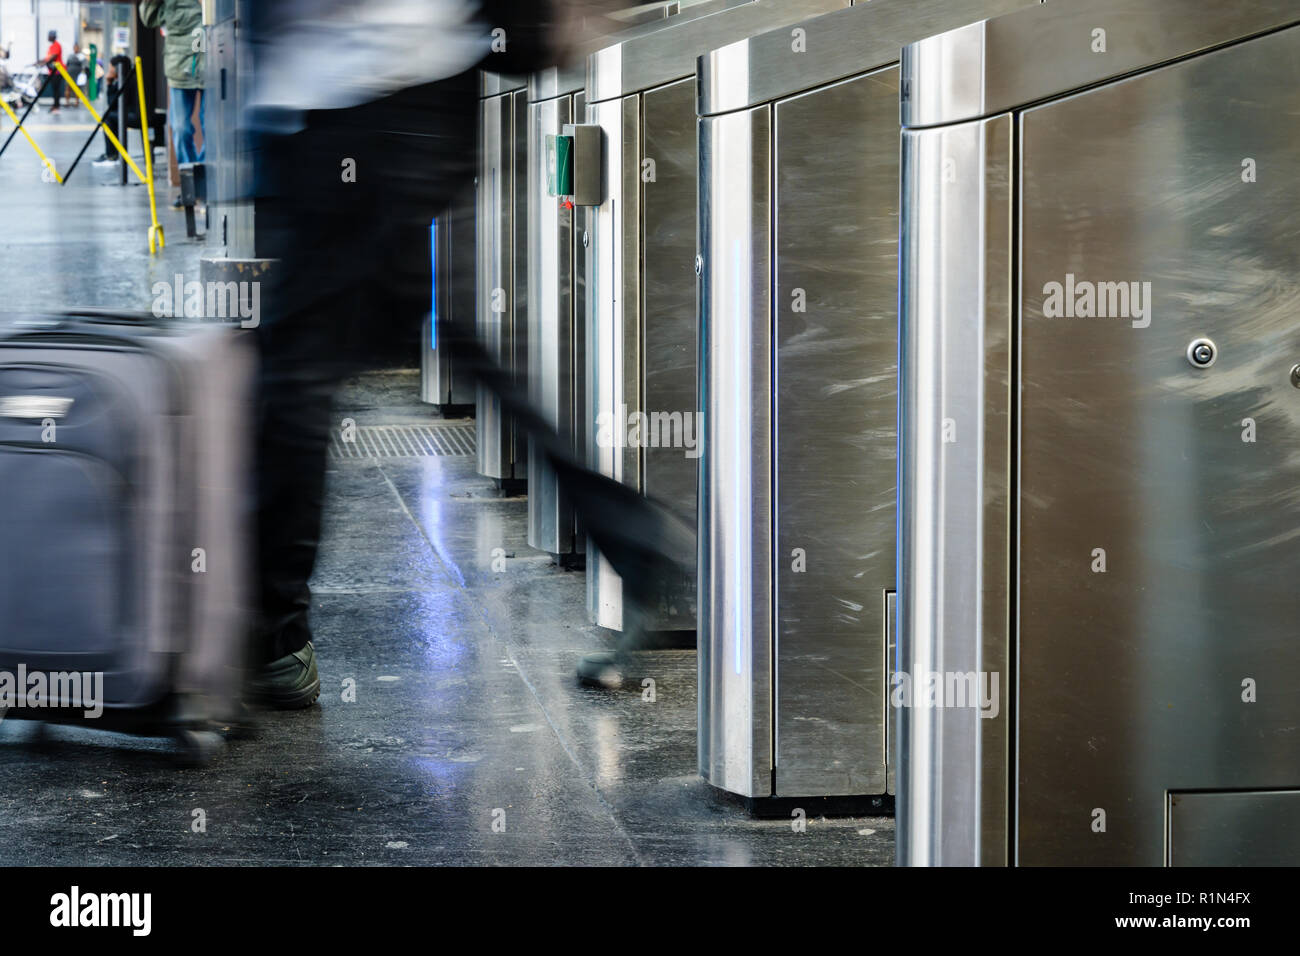 Vue latérale d'un homme avec une valise de matériel roulant en passant par des portes en acier inoxydable d'un ticket de transport public gare à Paris avec effet de flou. Banque D'Images